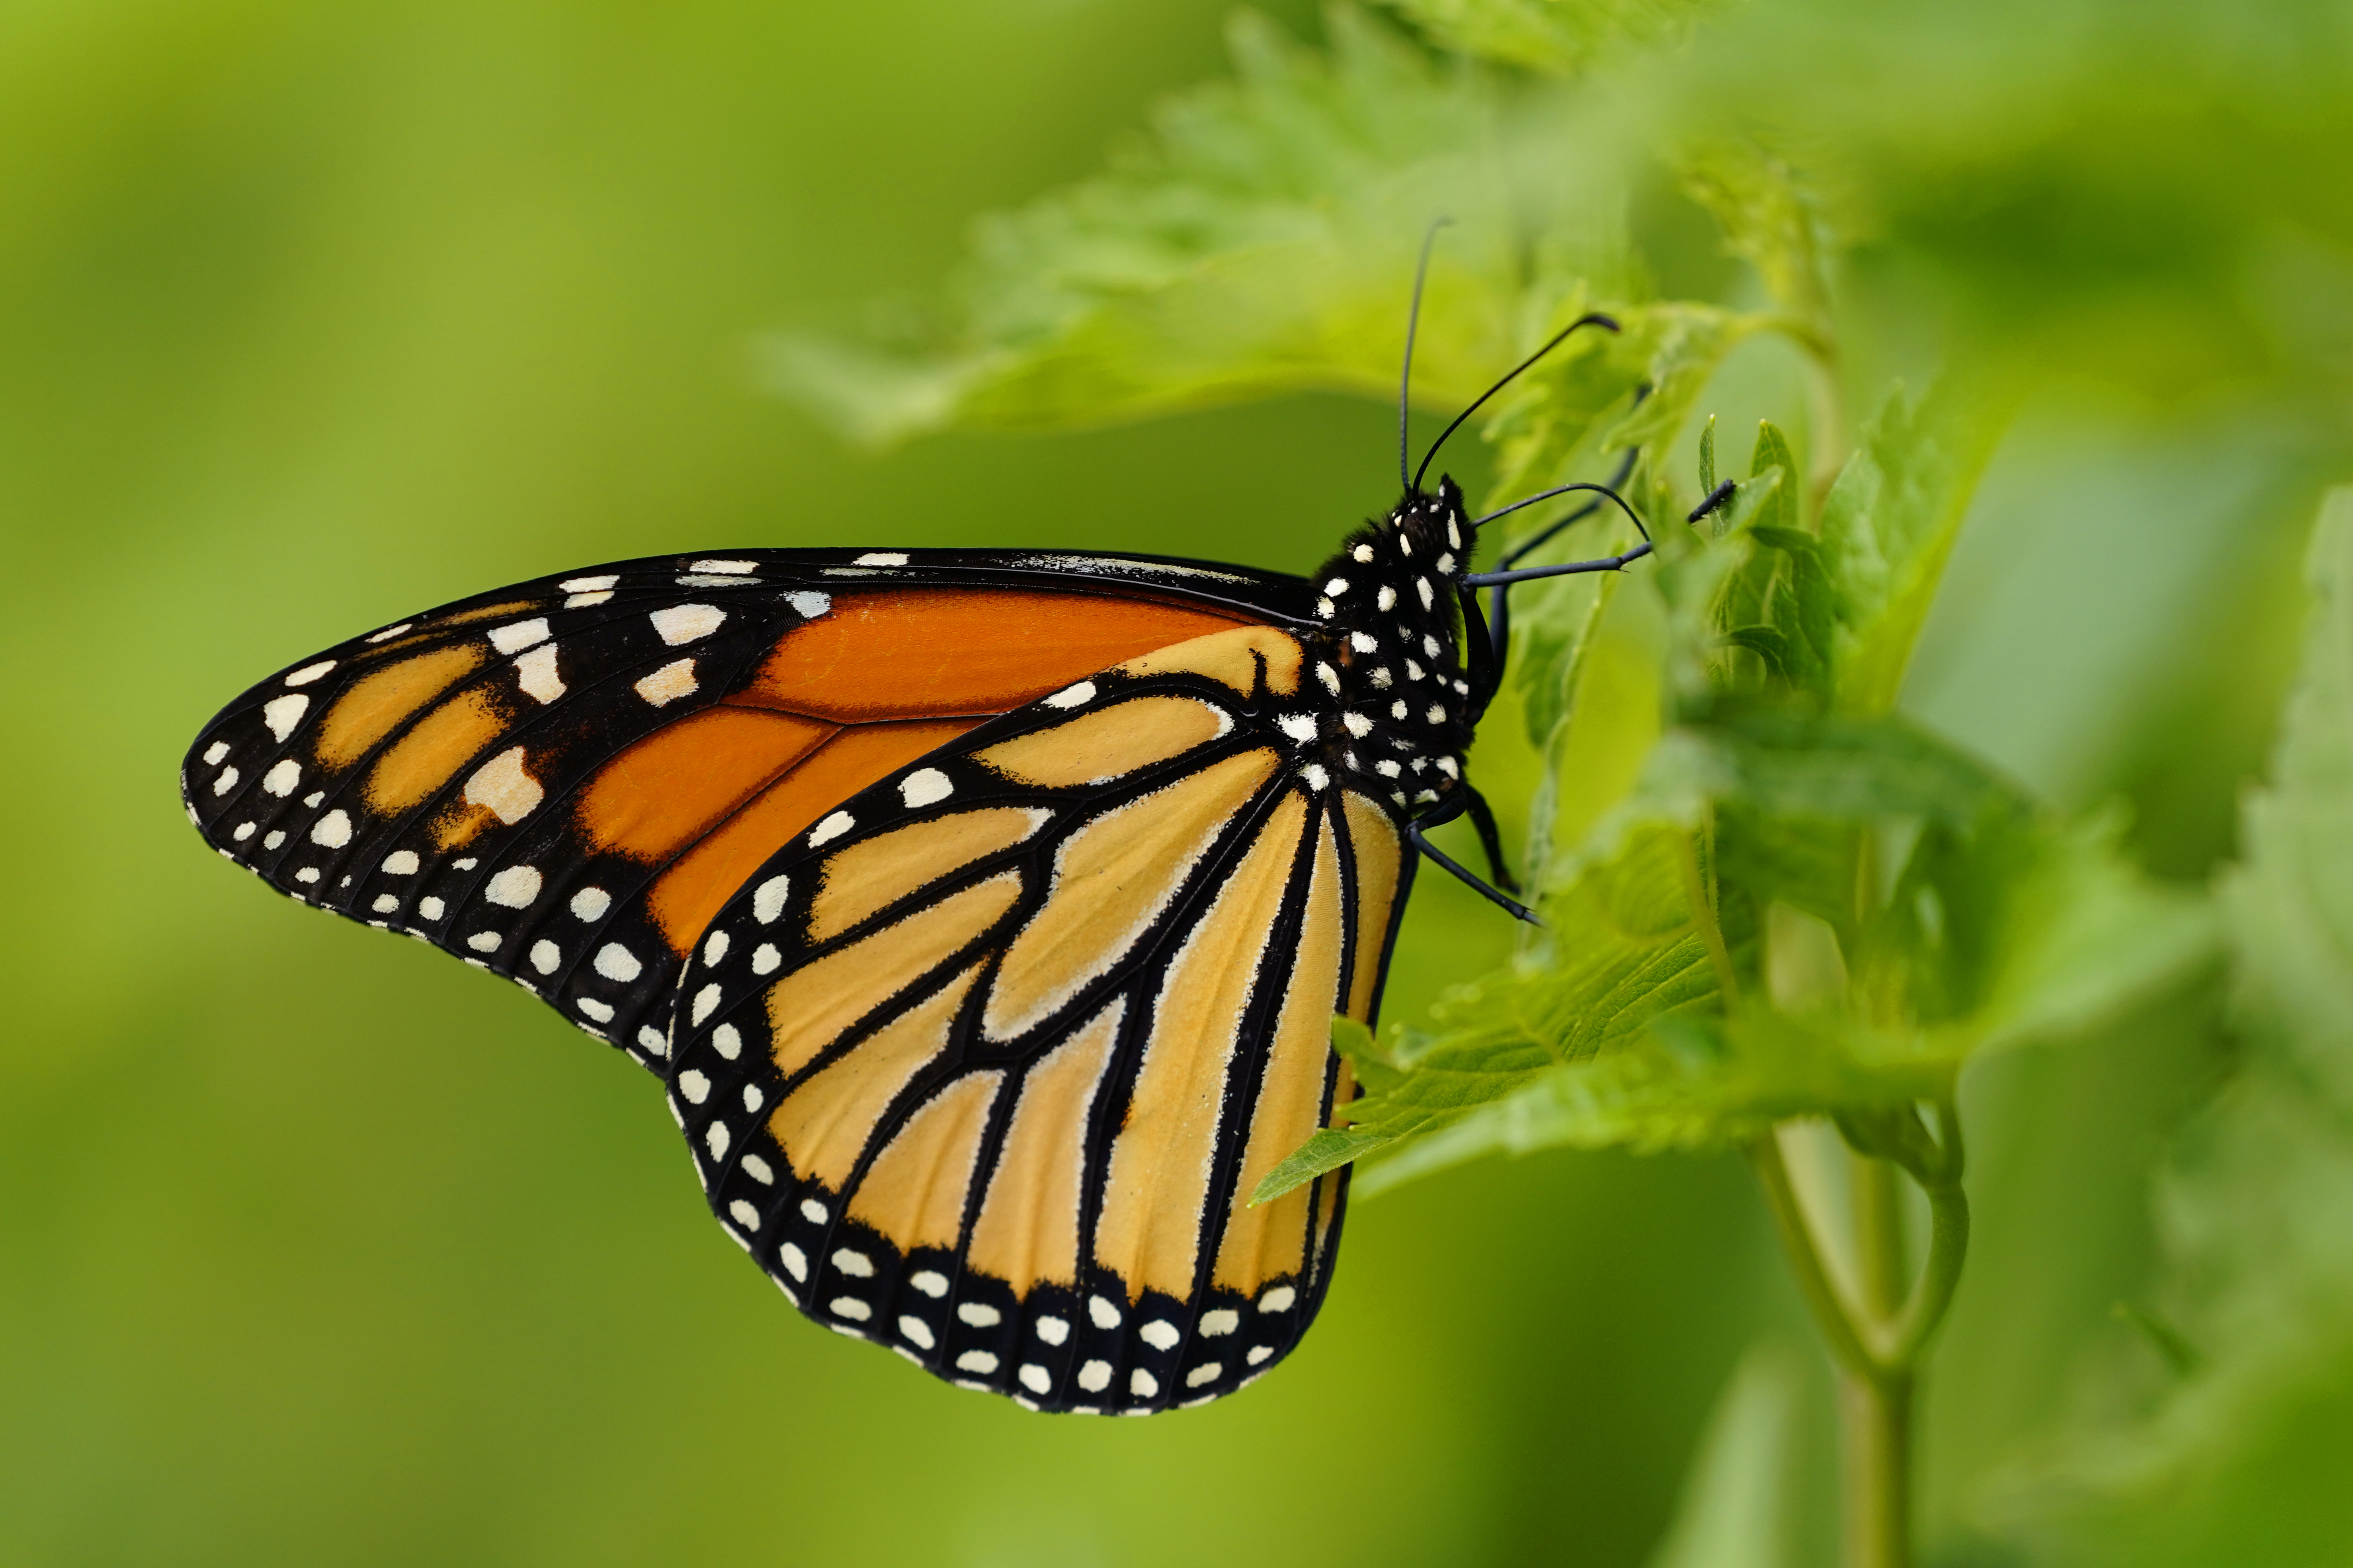 Helping California's monarch butterflies: an update